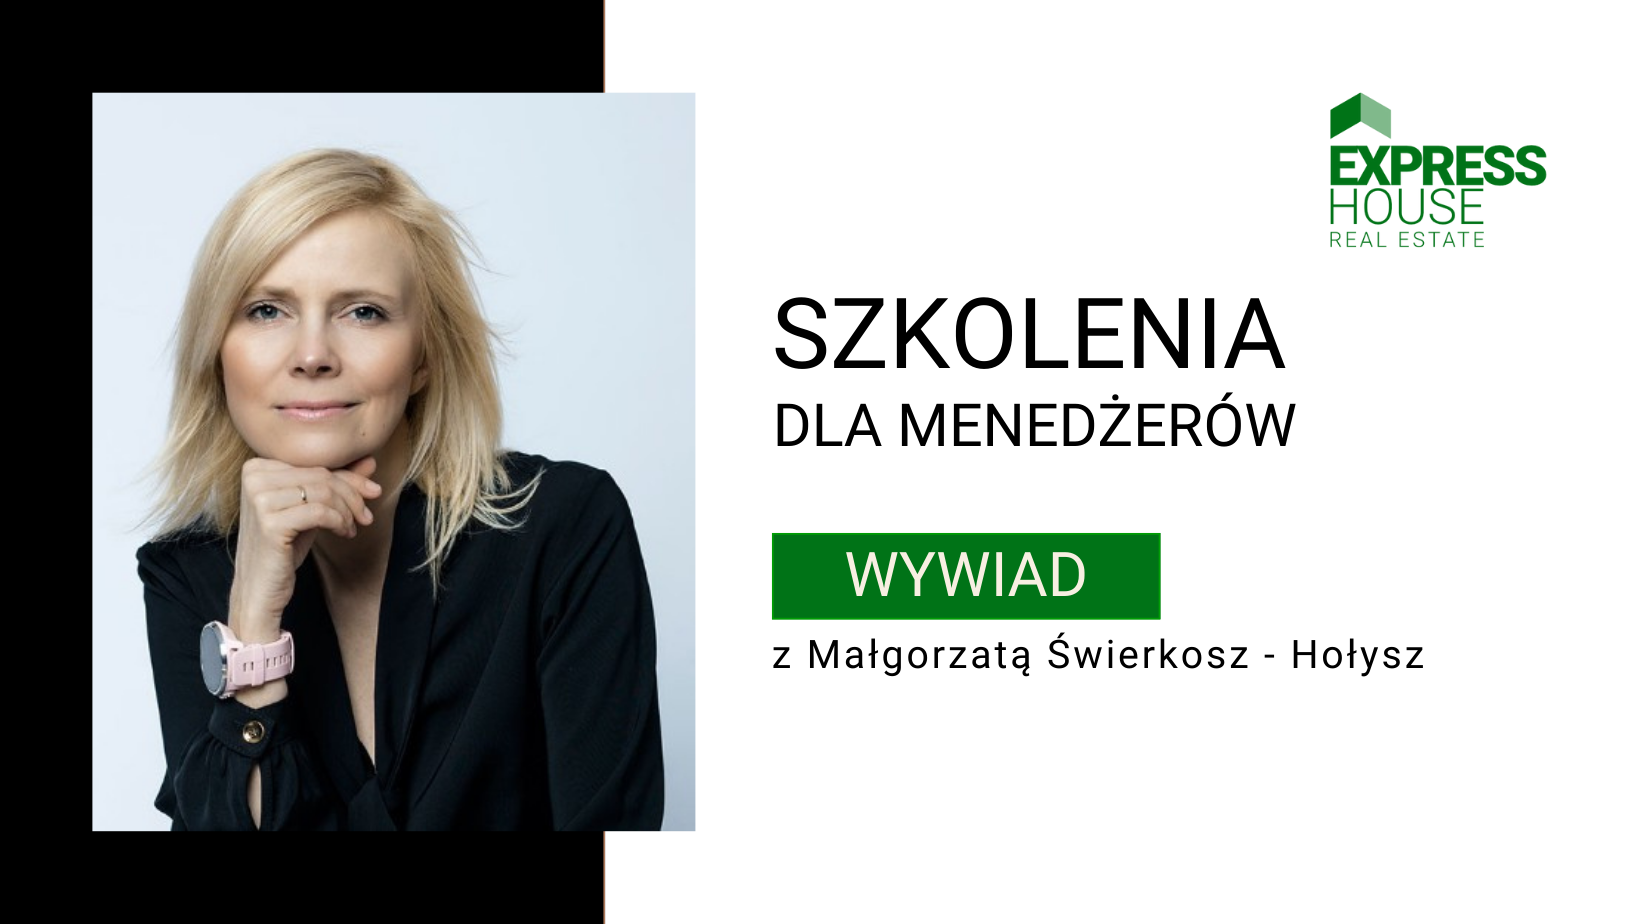 Szkolenia dla menedżerów - wywiad z Małgorzatą Świerkosz - Hołysz